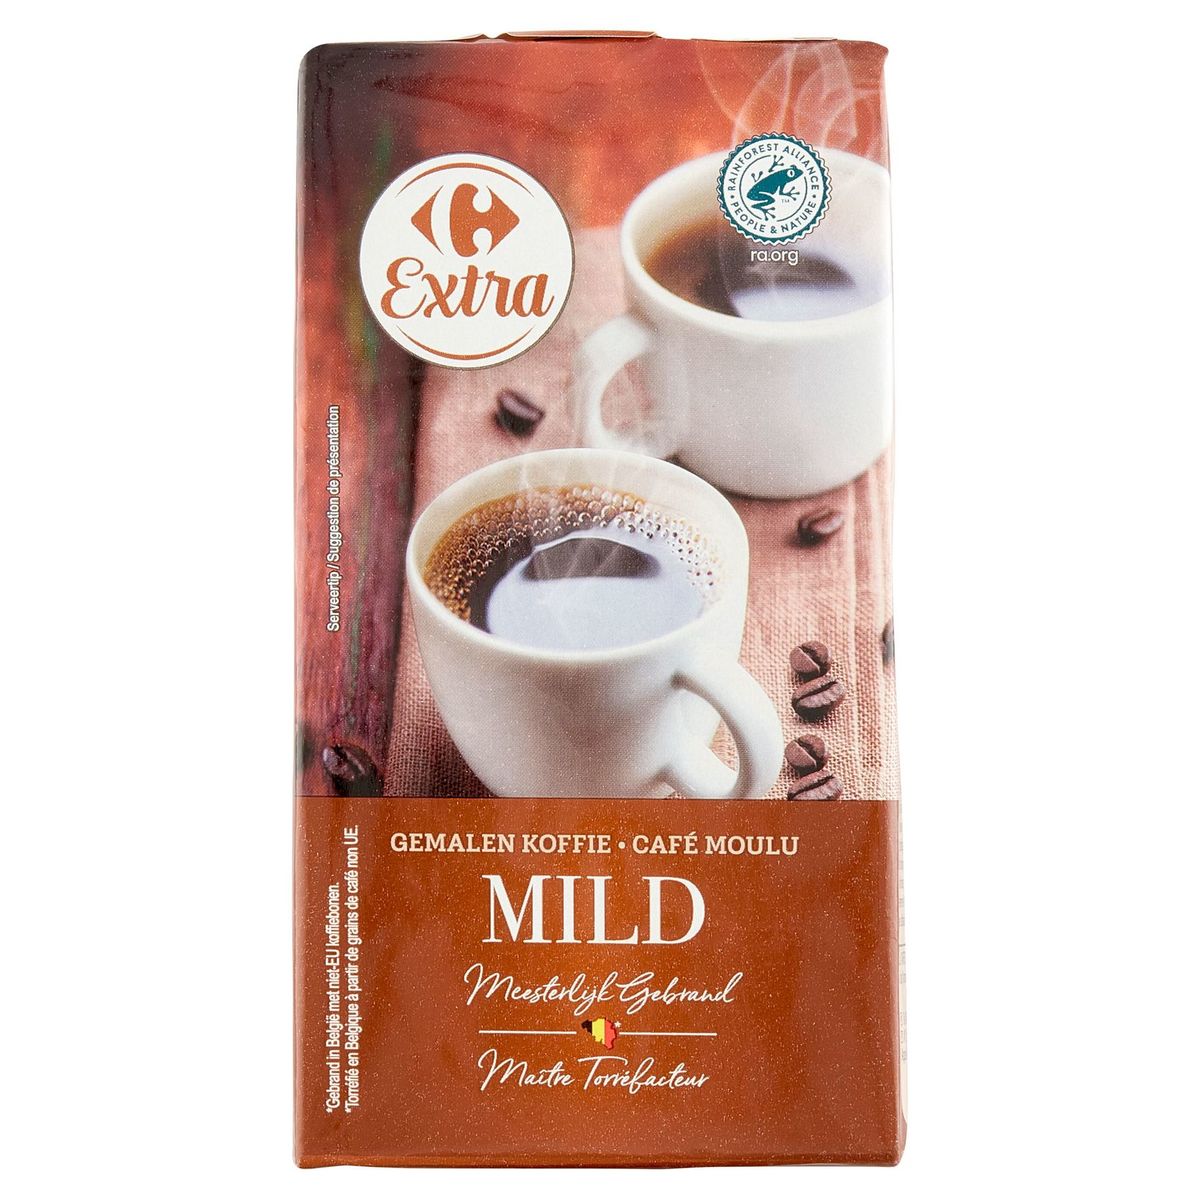 Carrefour Extra Gemalen Koffie Mild 250 g